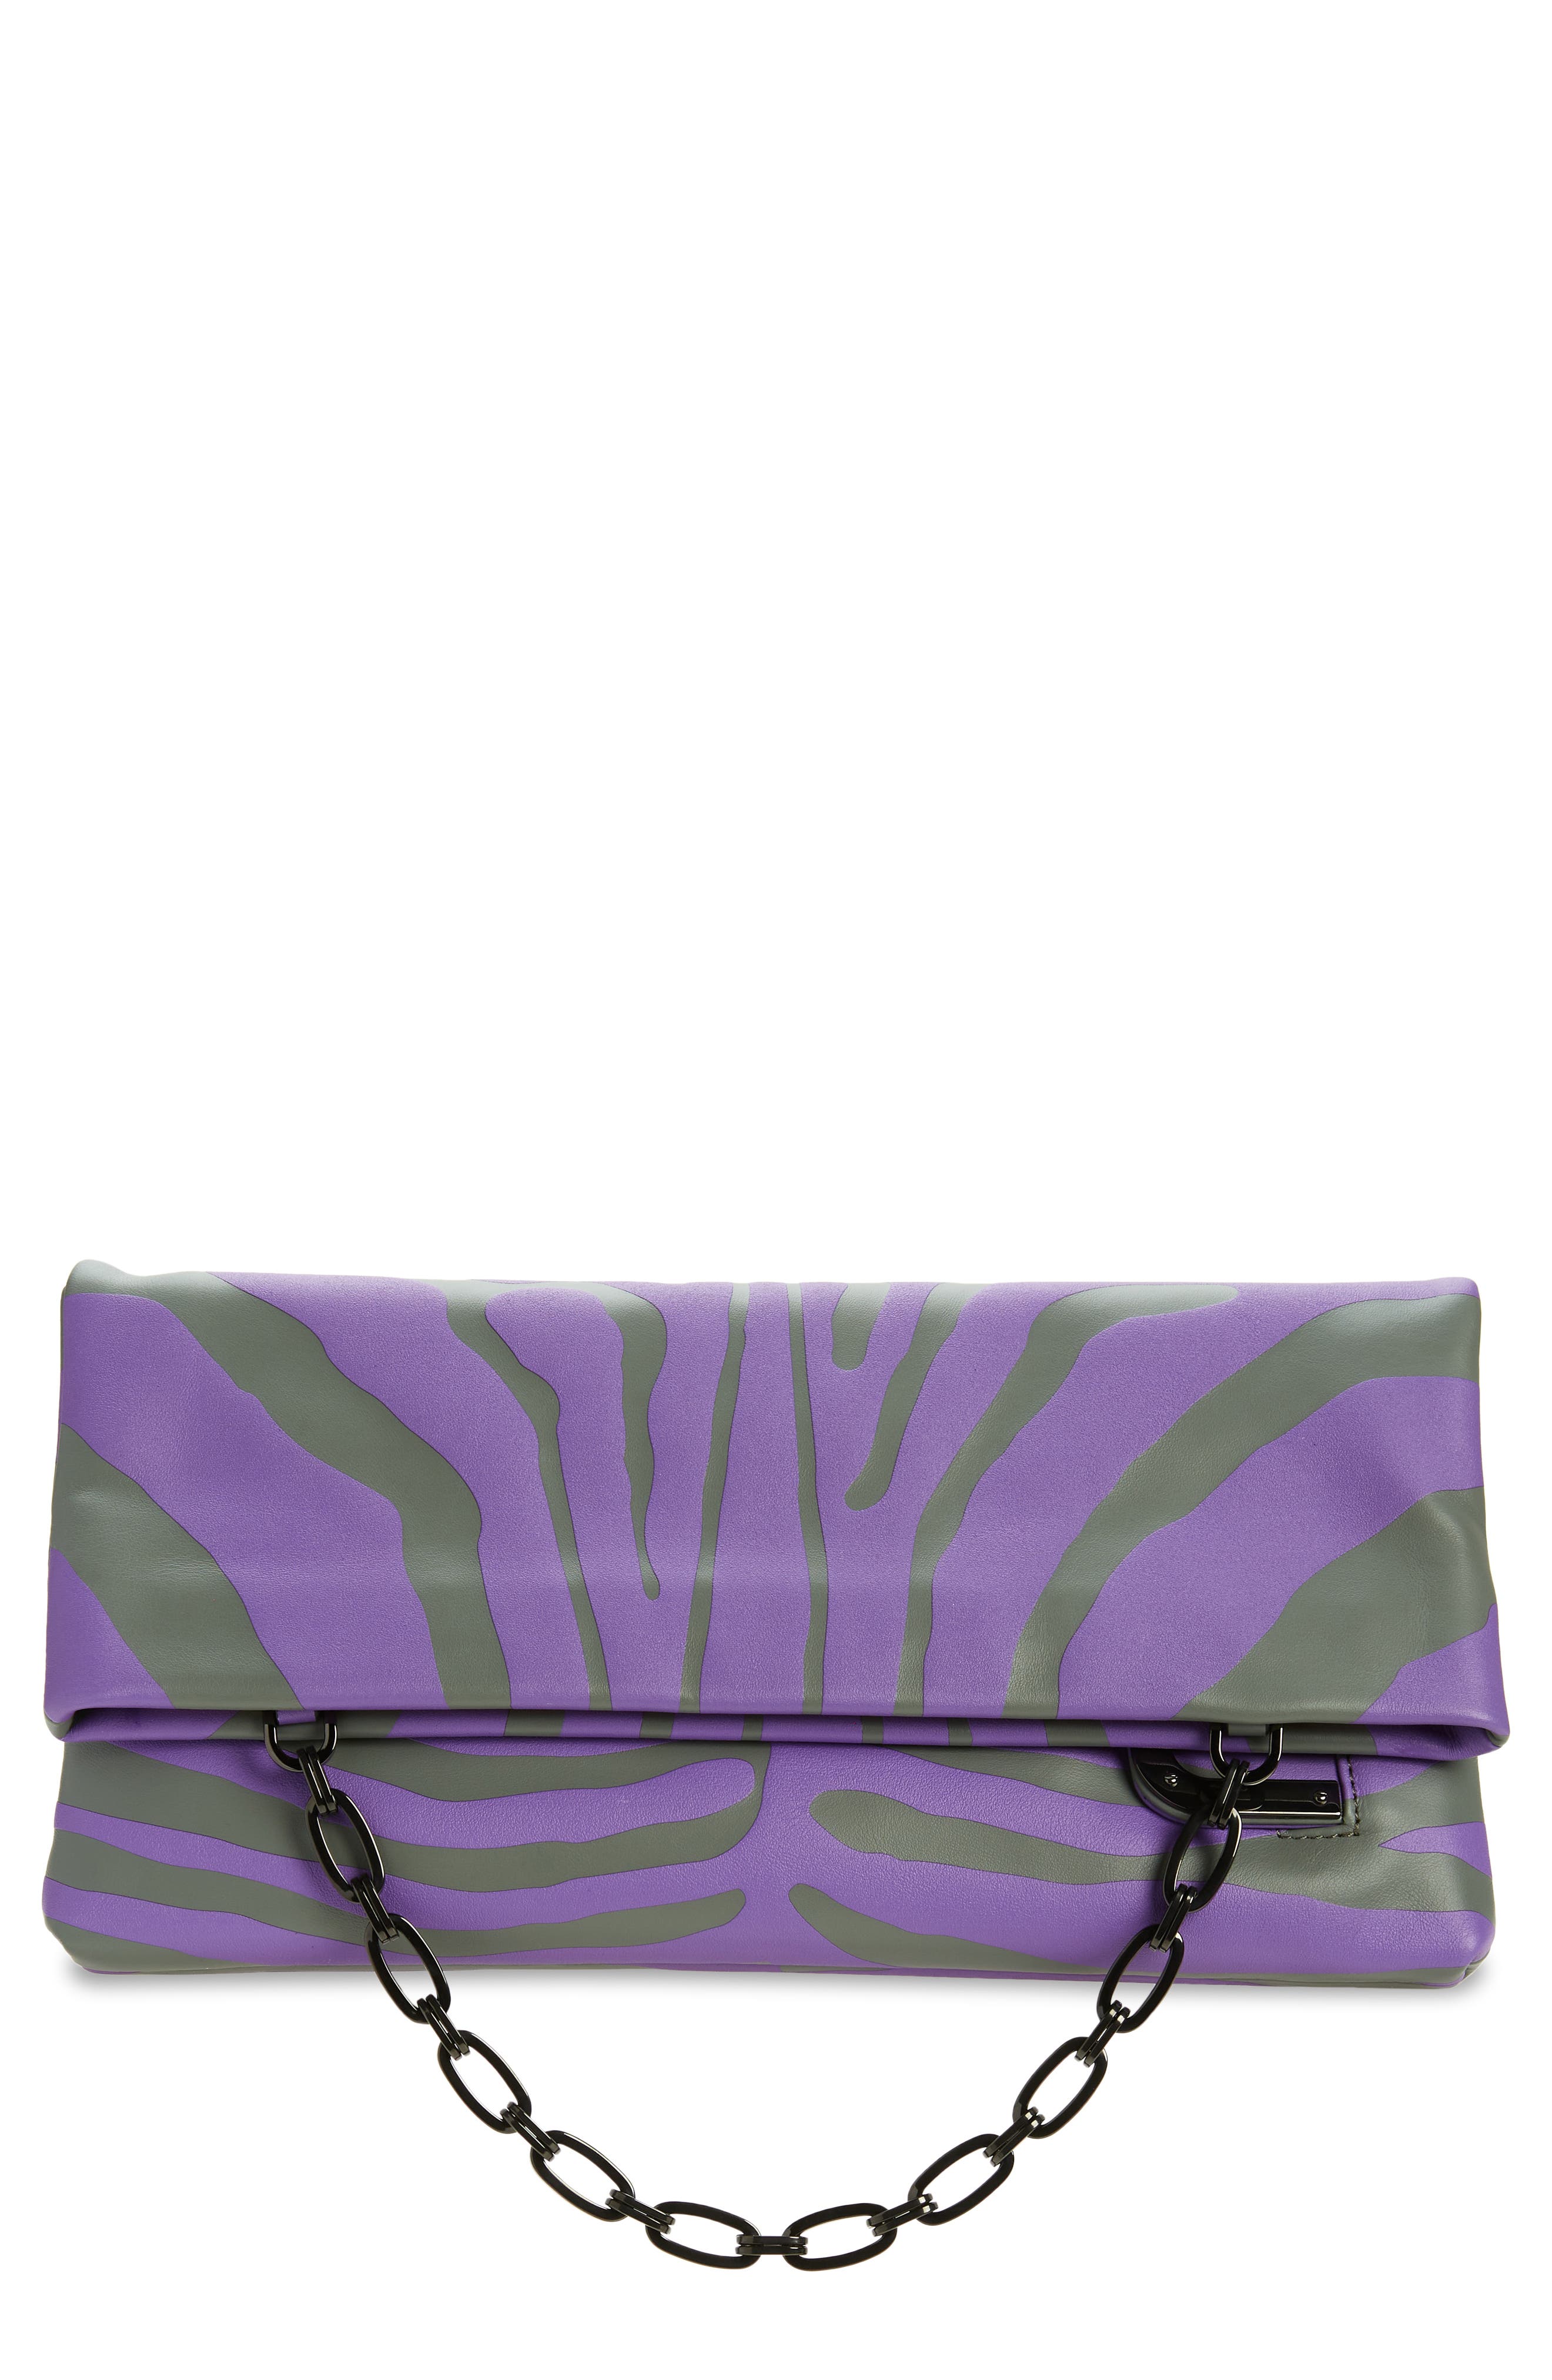 Bienen Davis x Aureta Aperitivo Frame Clutch in Purple Zebra/Gunmetal